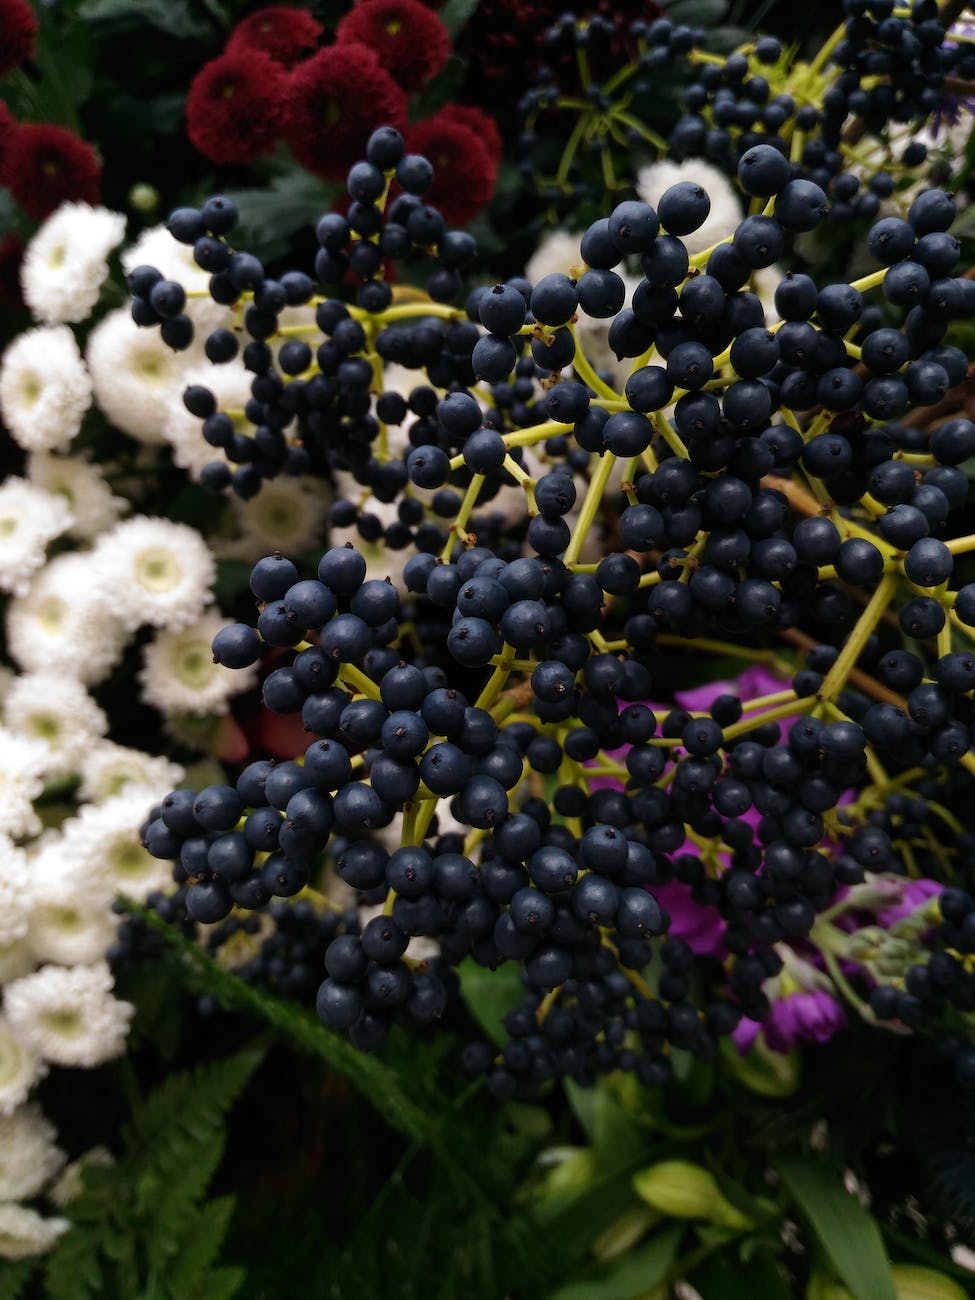 elderberries in close up shot